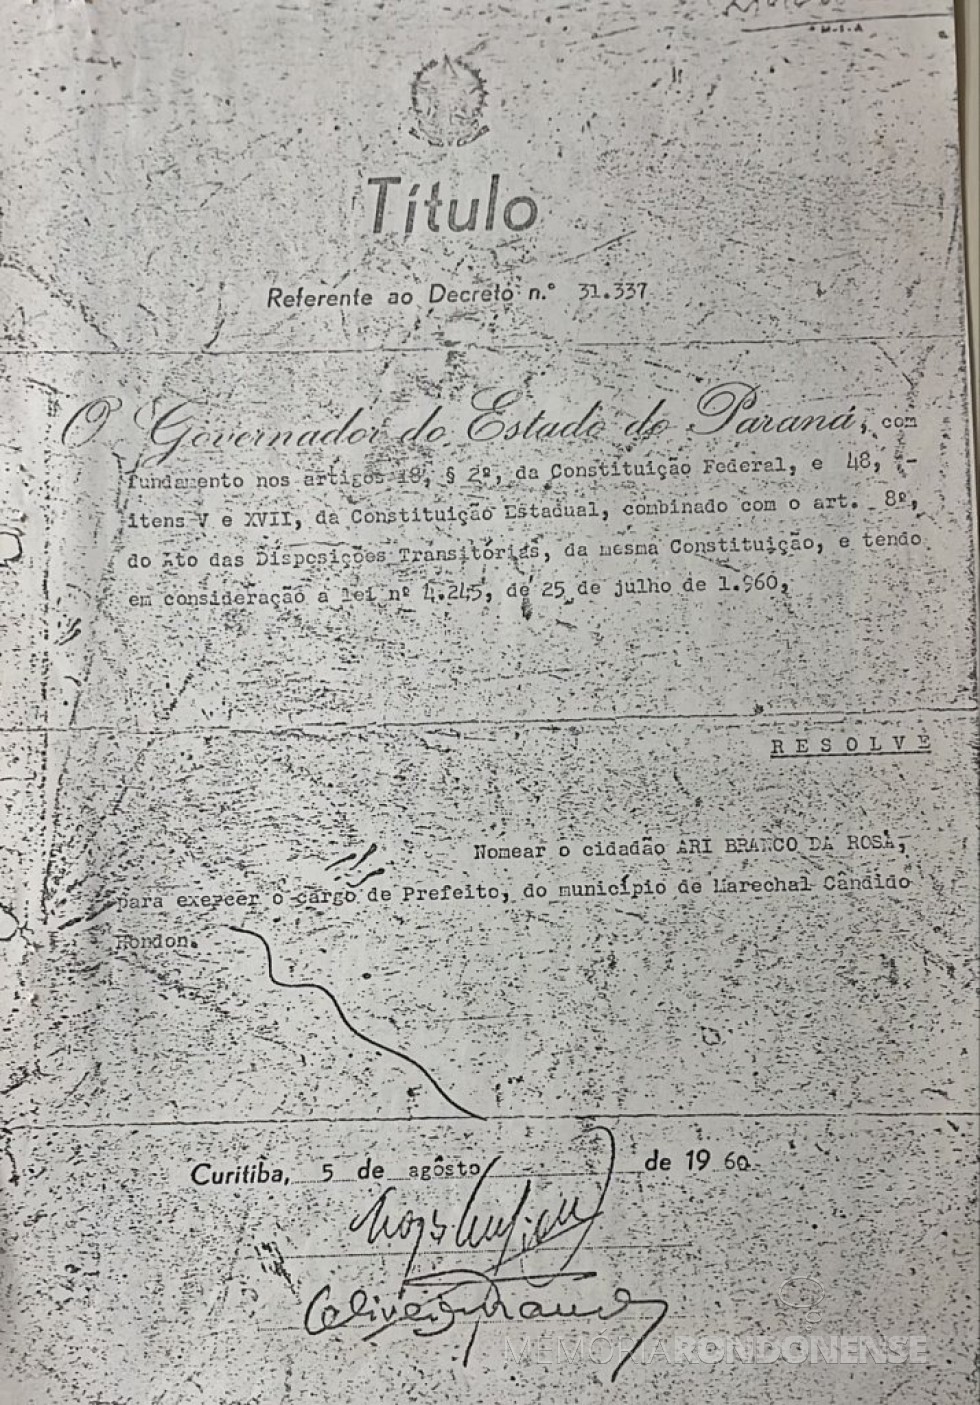 || Titulo de Decreto nº 31.337 que nomeou Ari Branco da Rosa como primeiro prefeito do município de Marechal Cândido Rondon, em agosto de 1960.
Imagem: Acervo Câmara Municipal de Marechal Cândido Rondon - FOTO 5 - 